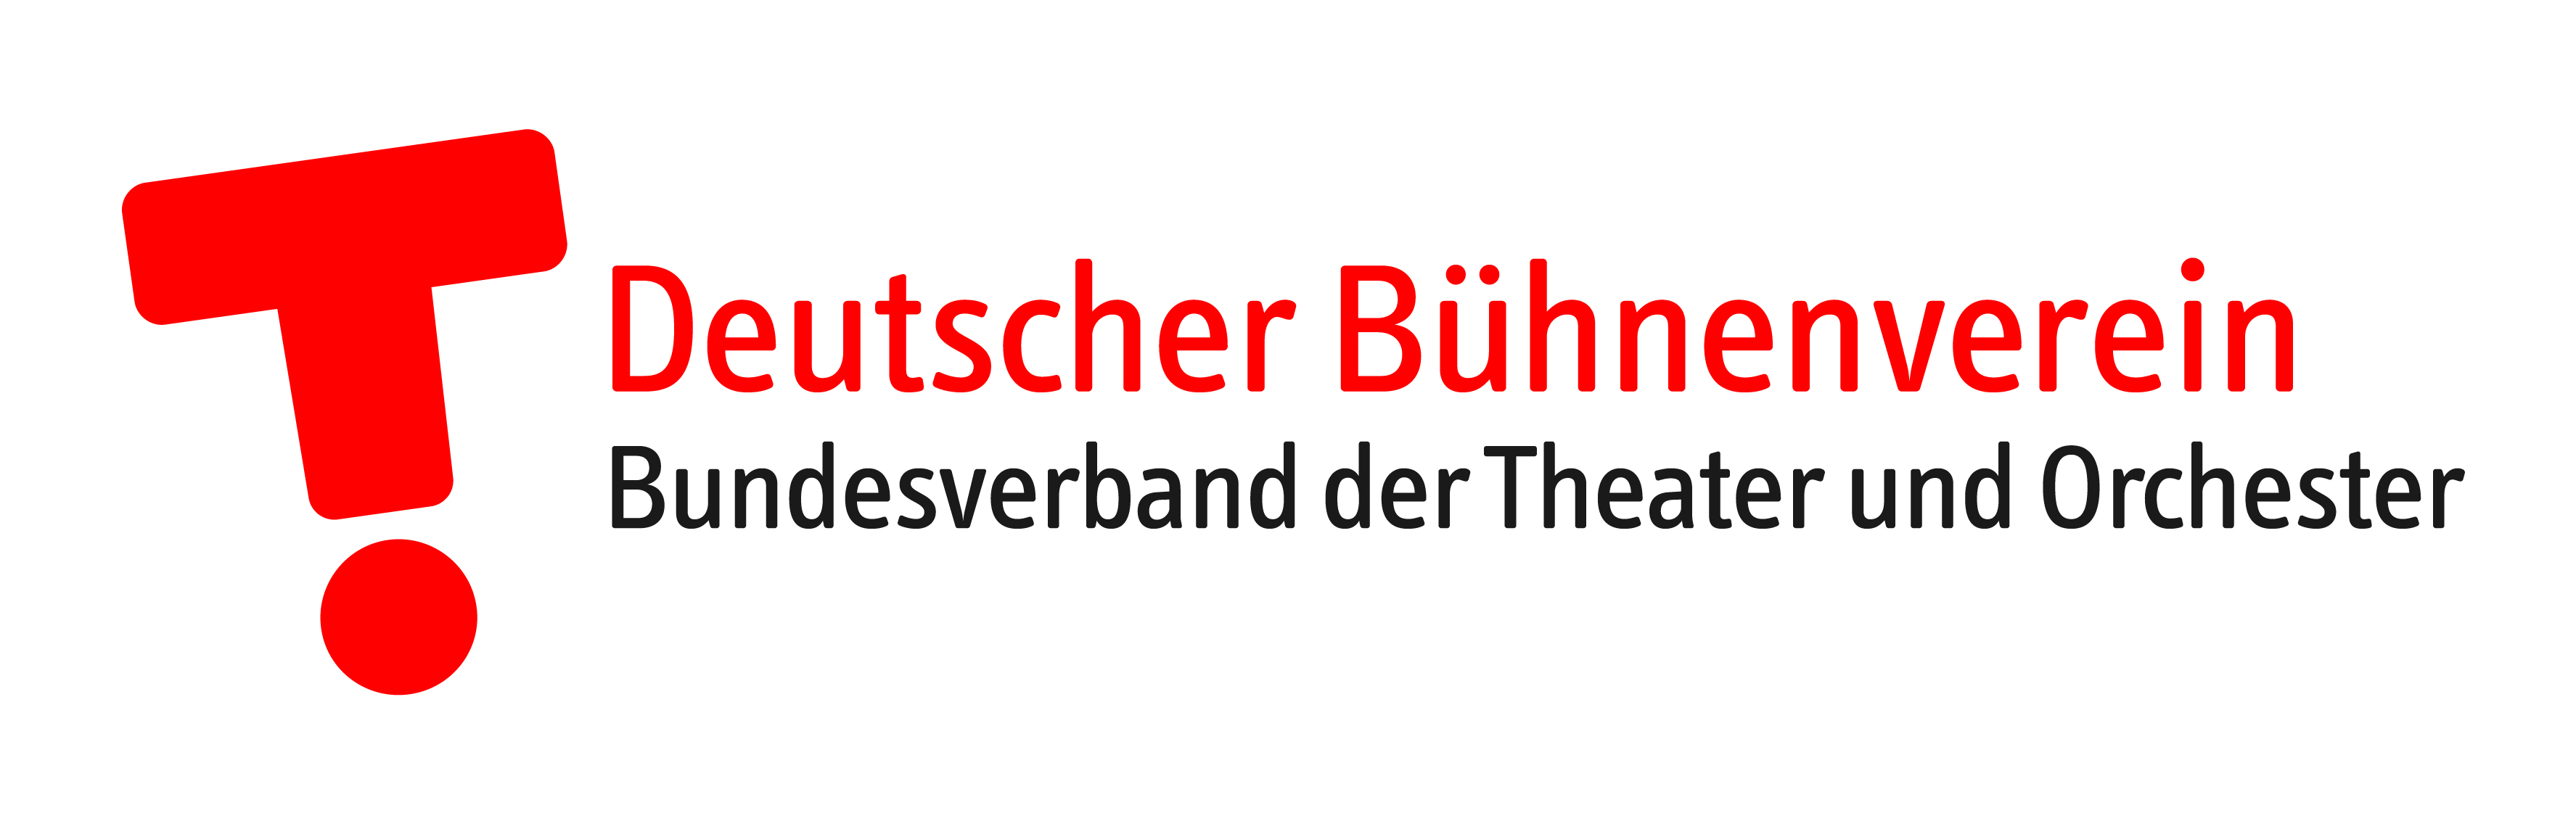 Deutscher Bühnenverein Bundesverband der Theater und Orchester